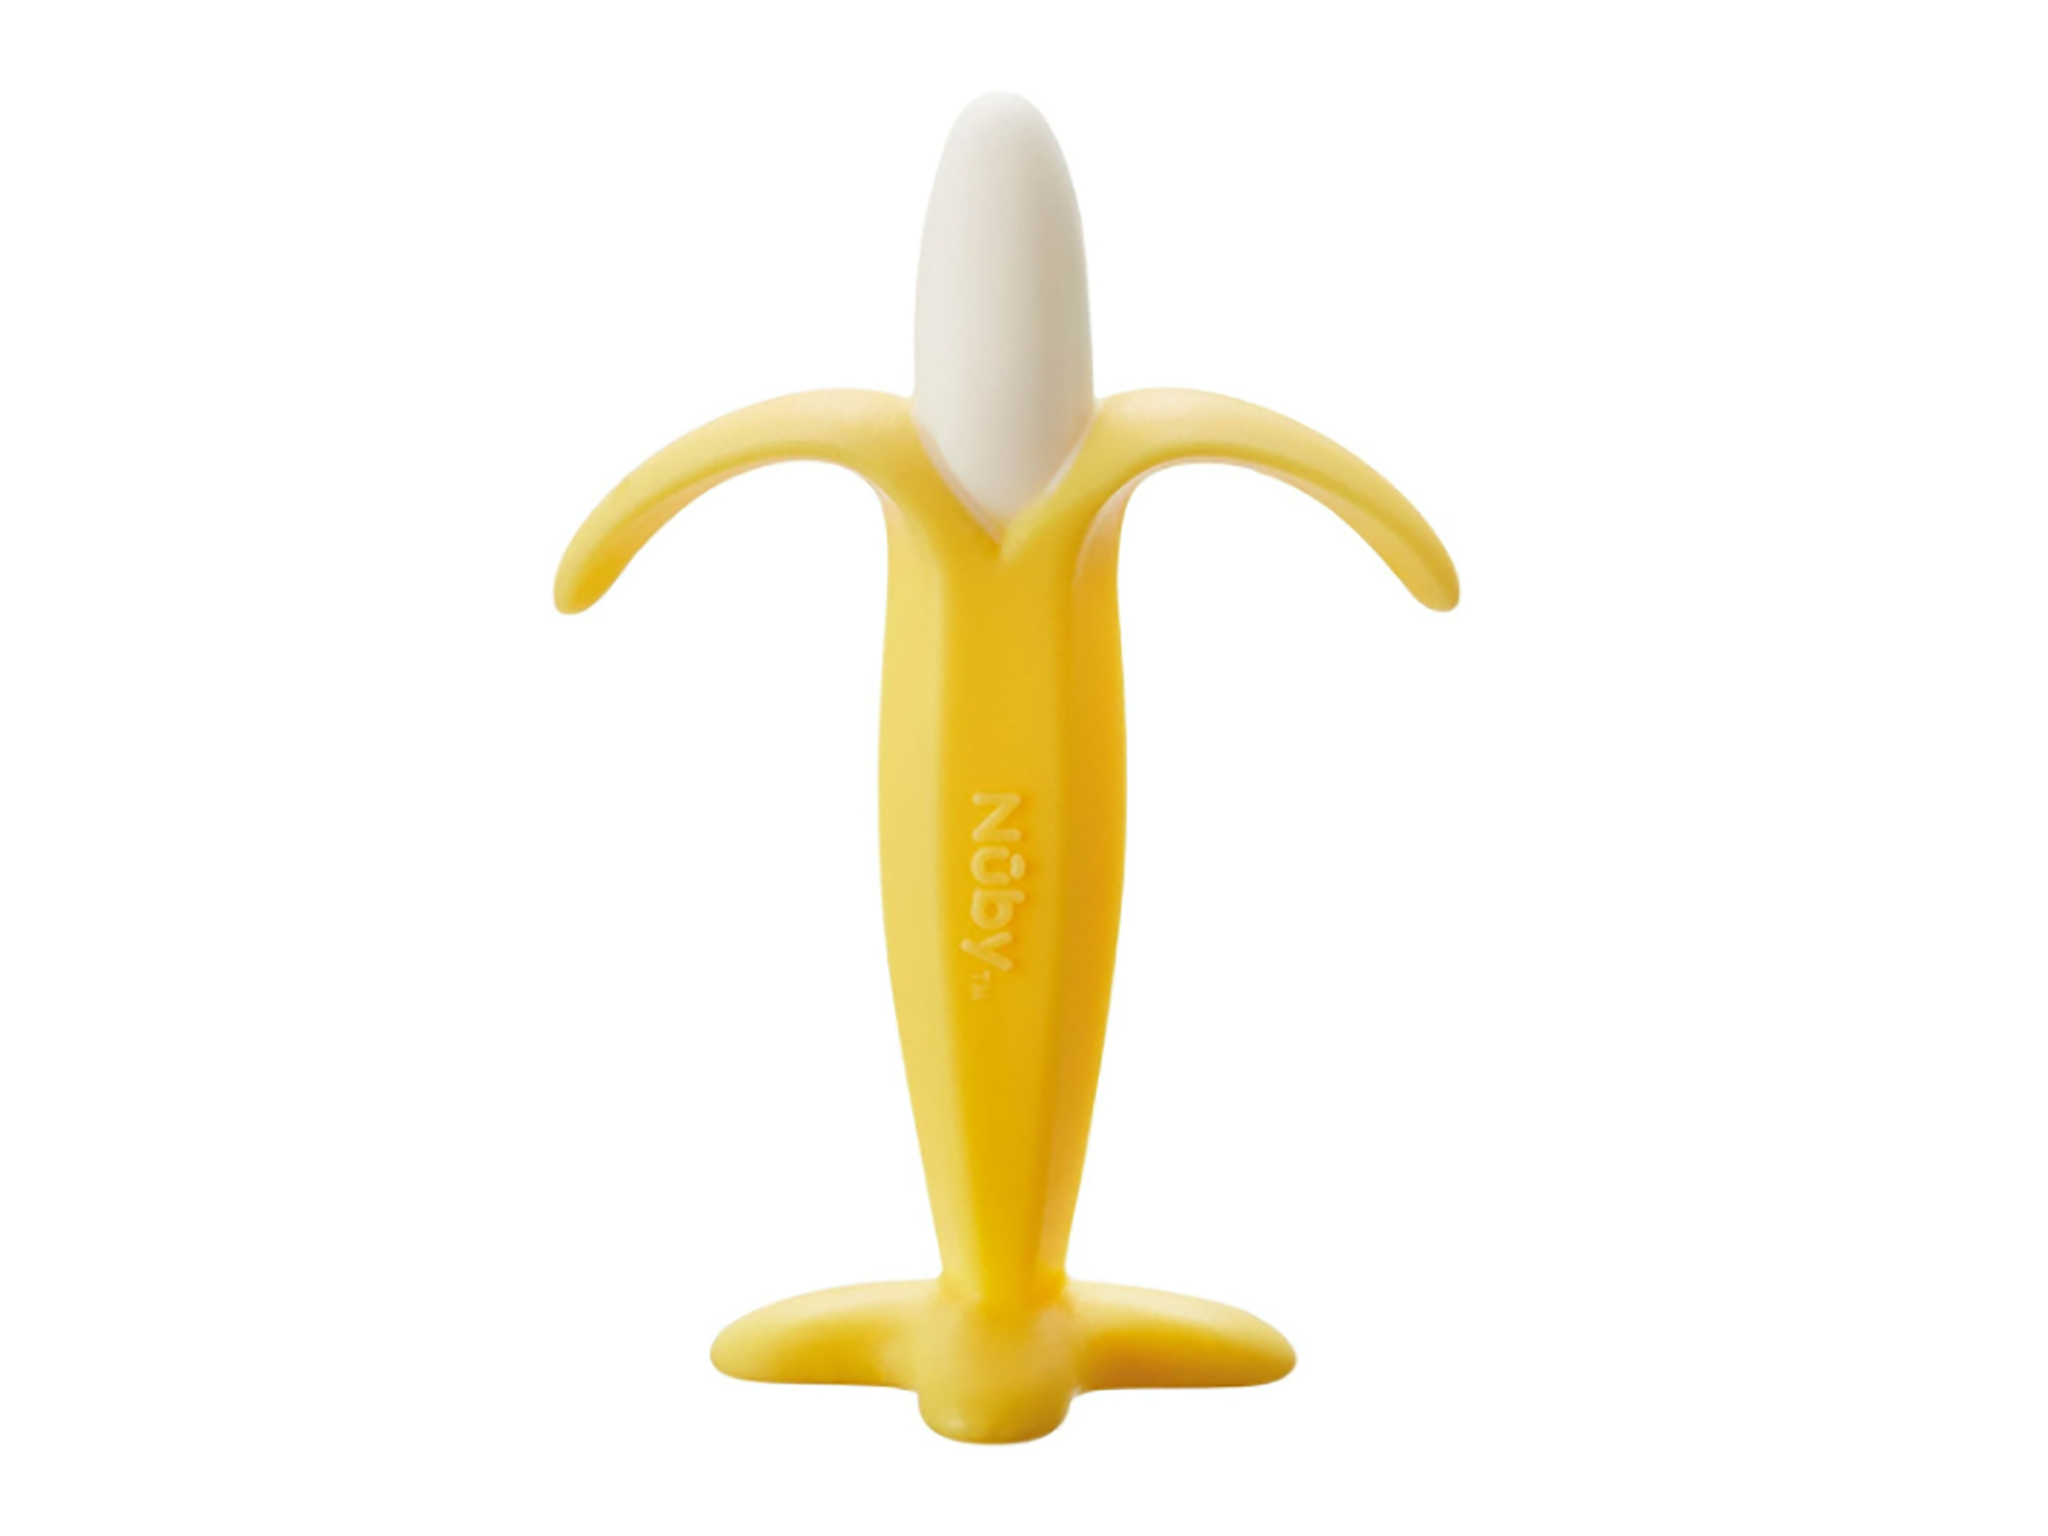 Nuby banana teether